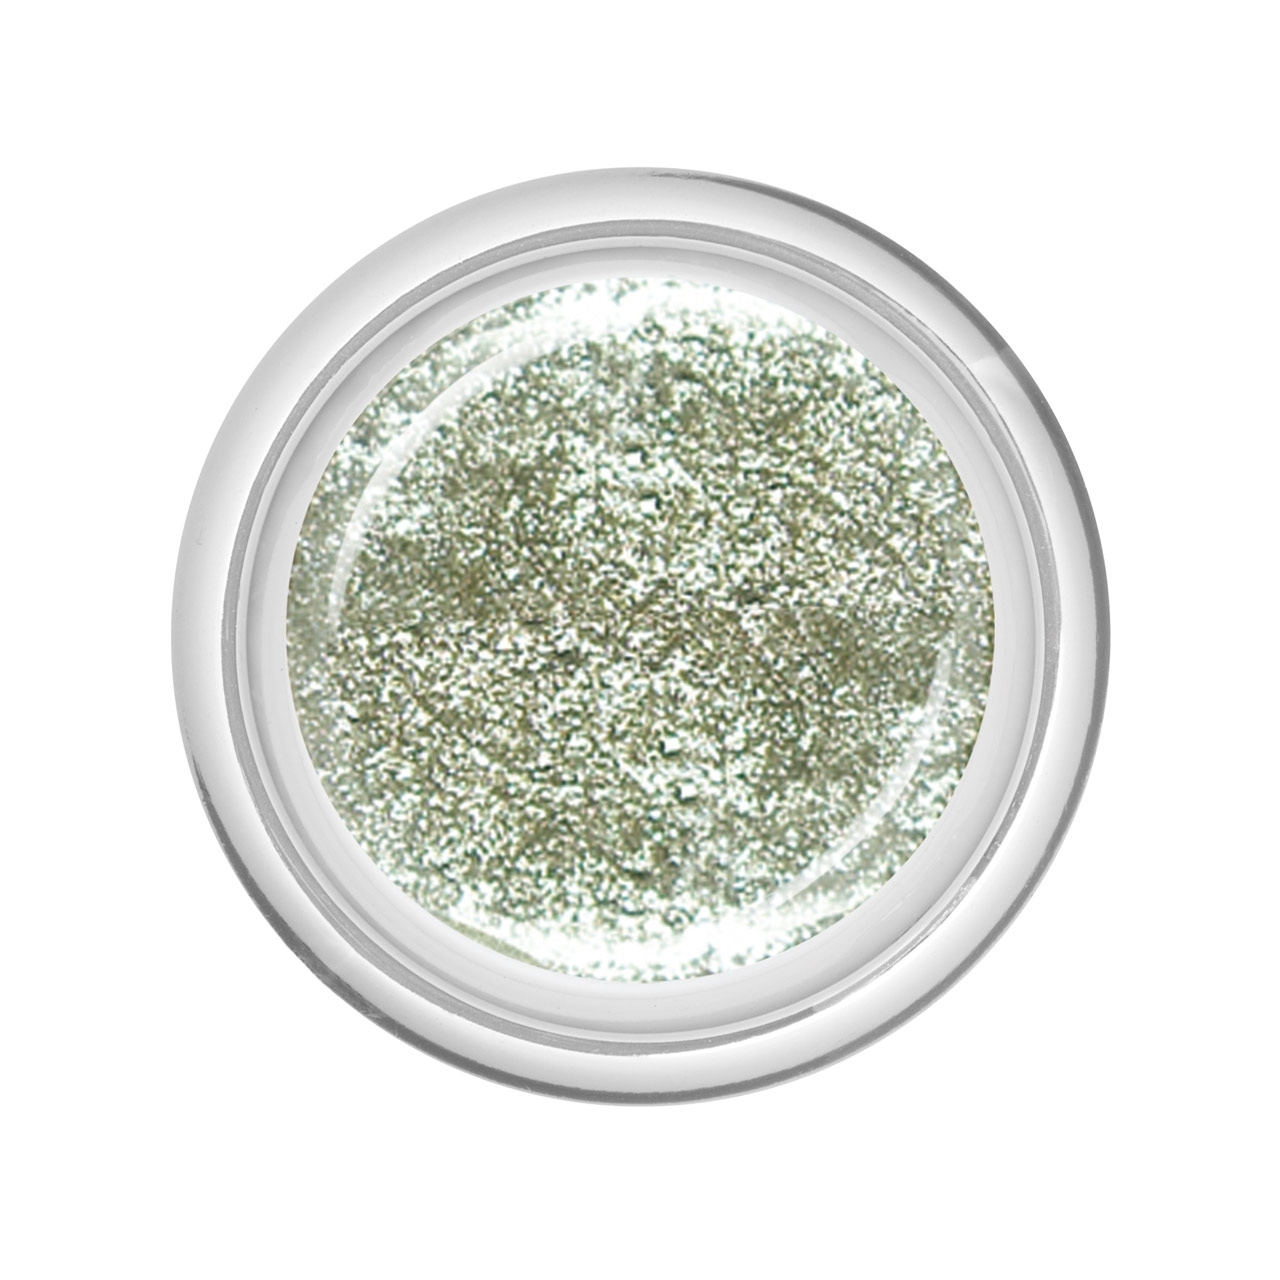 BAEHR BEAUTY CONCEPT - NAILS Colour-Gel Glitter Prosecco Fine 5 ml